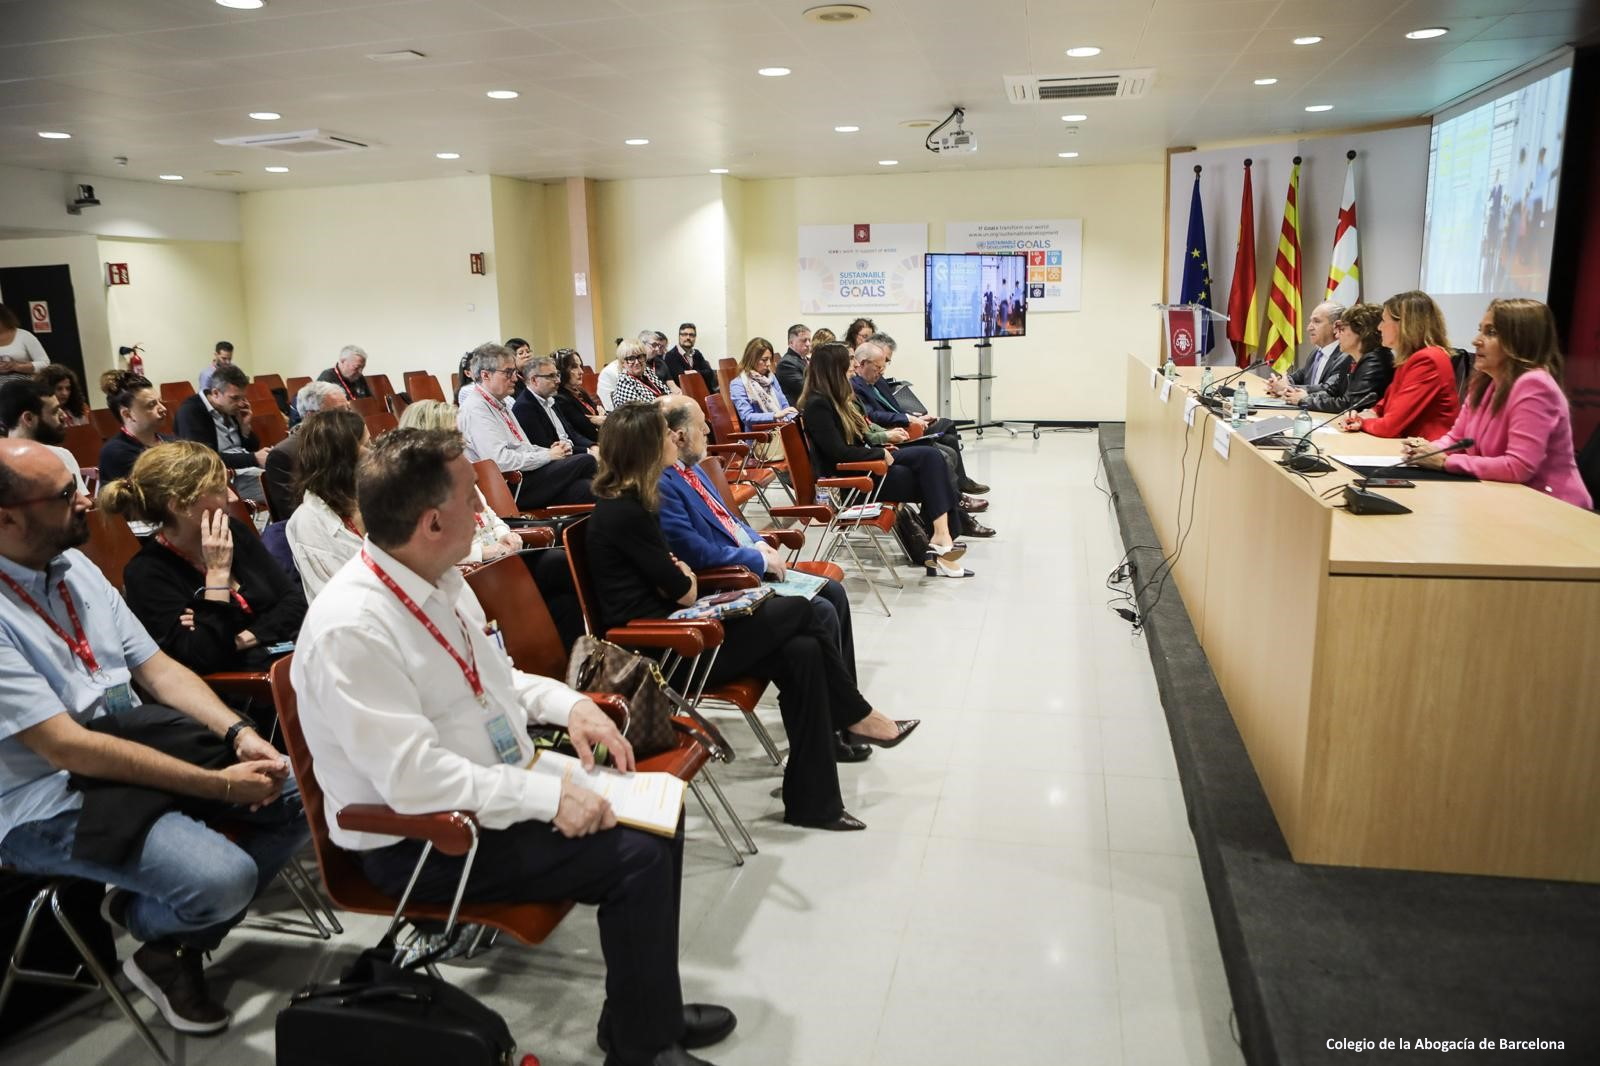 La adjunta segunda del Defensor del Pueblo, Patricia Bárcena, en el Congreso del Turno de Oficio en el Colegio de la Abogacía de Barcelona